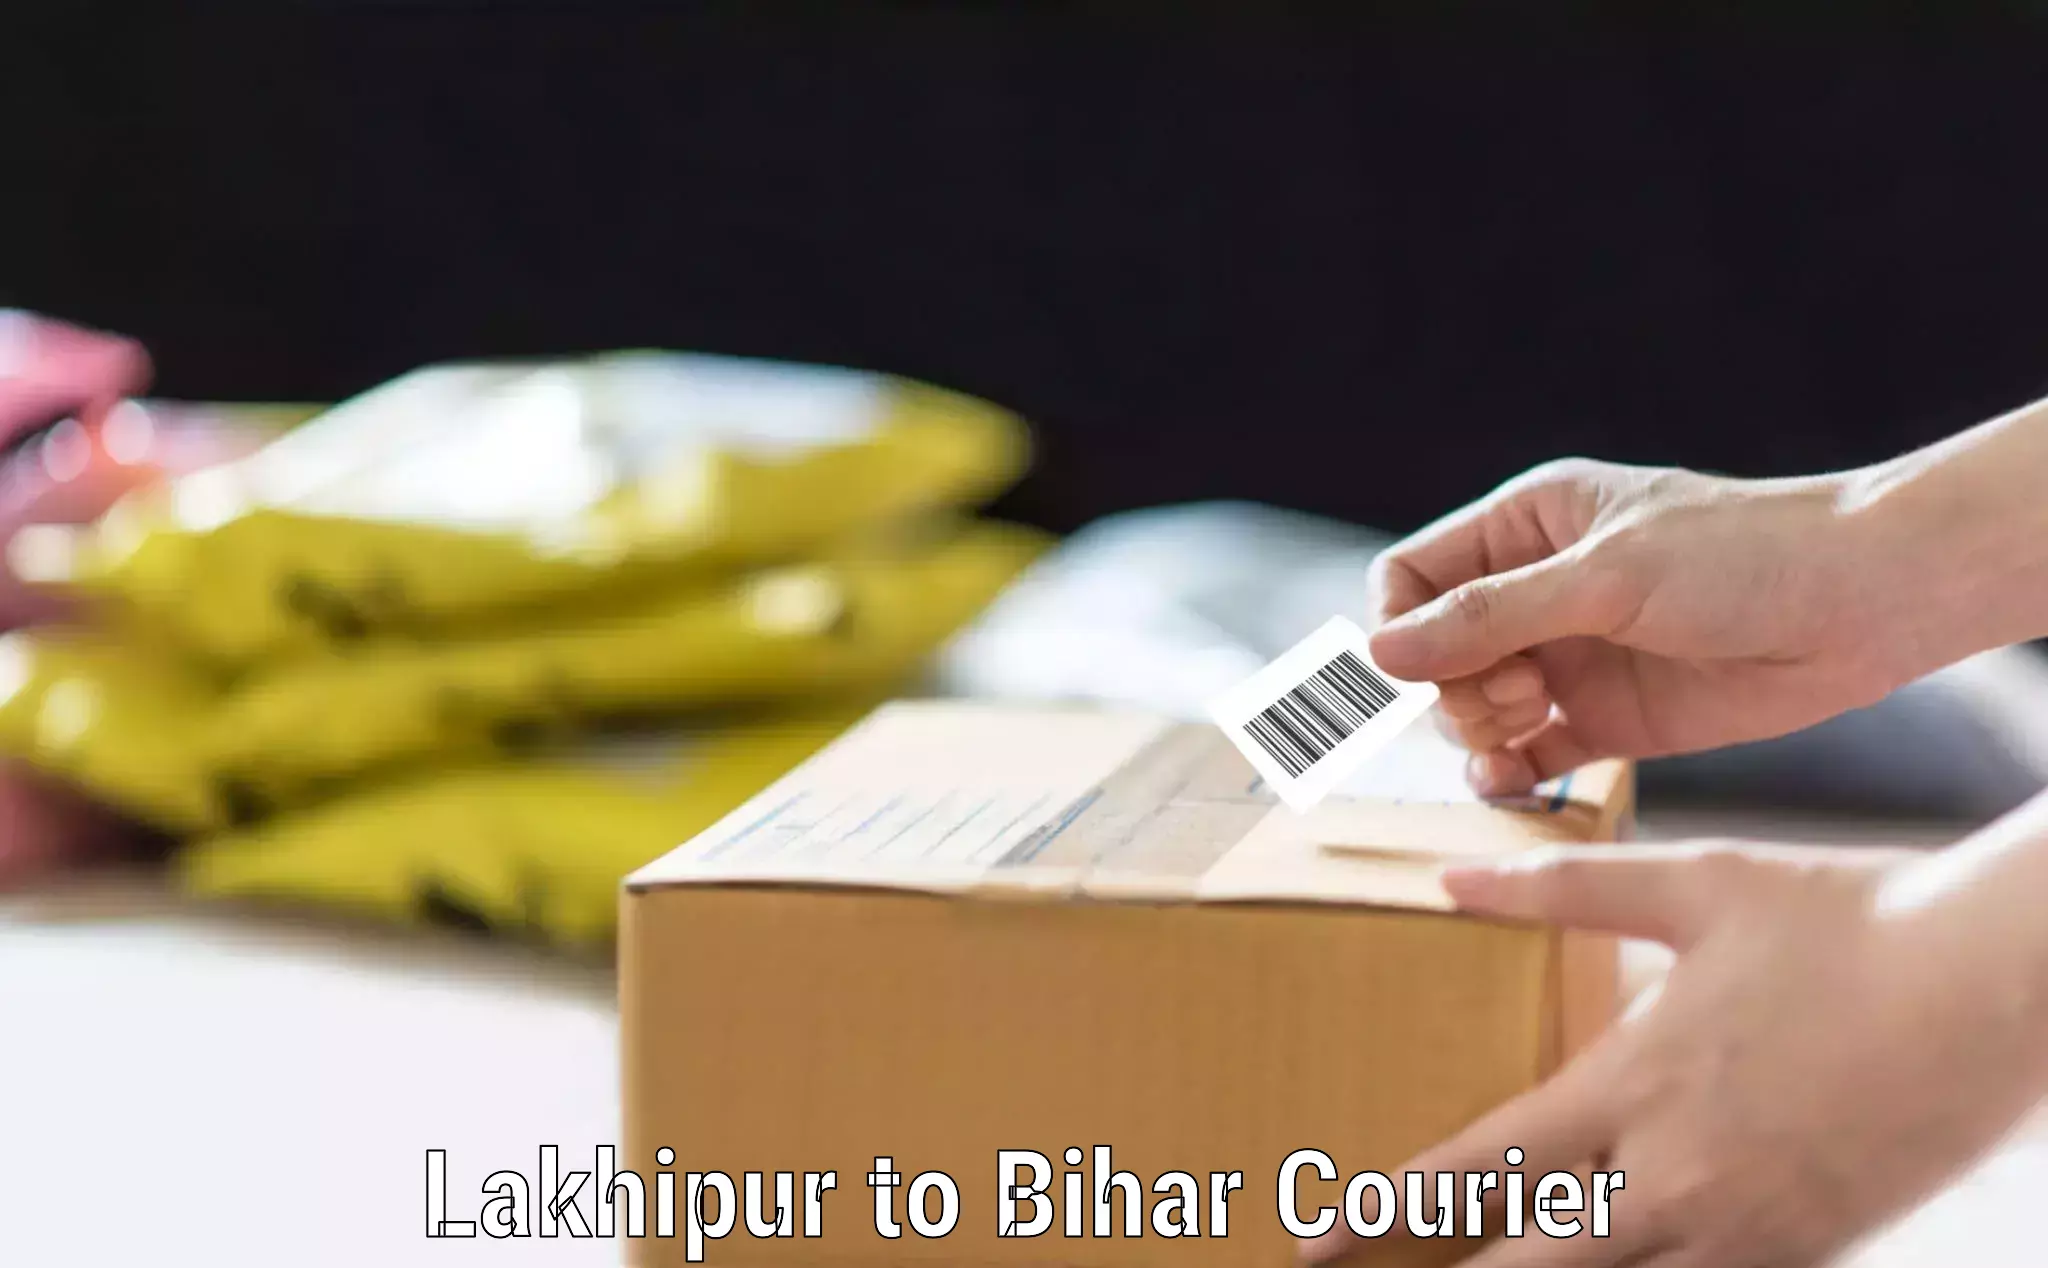 Luggage transit service Lakhipur to Bihar